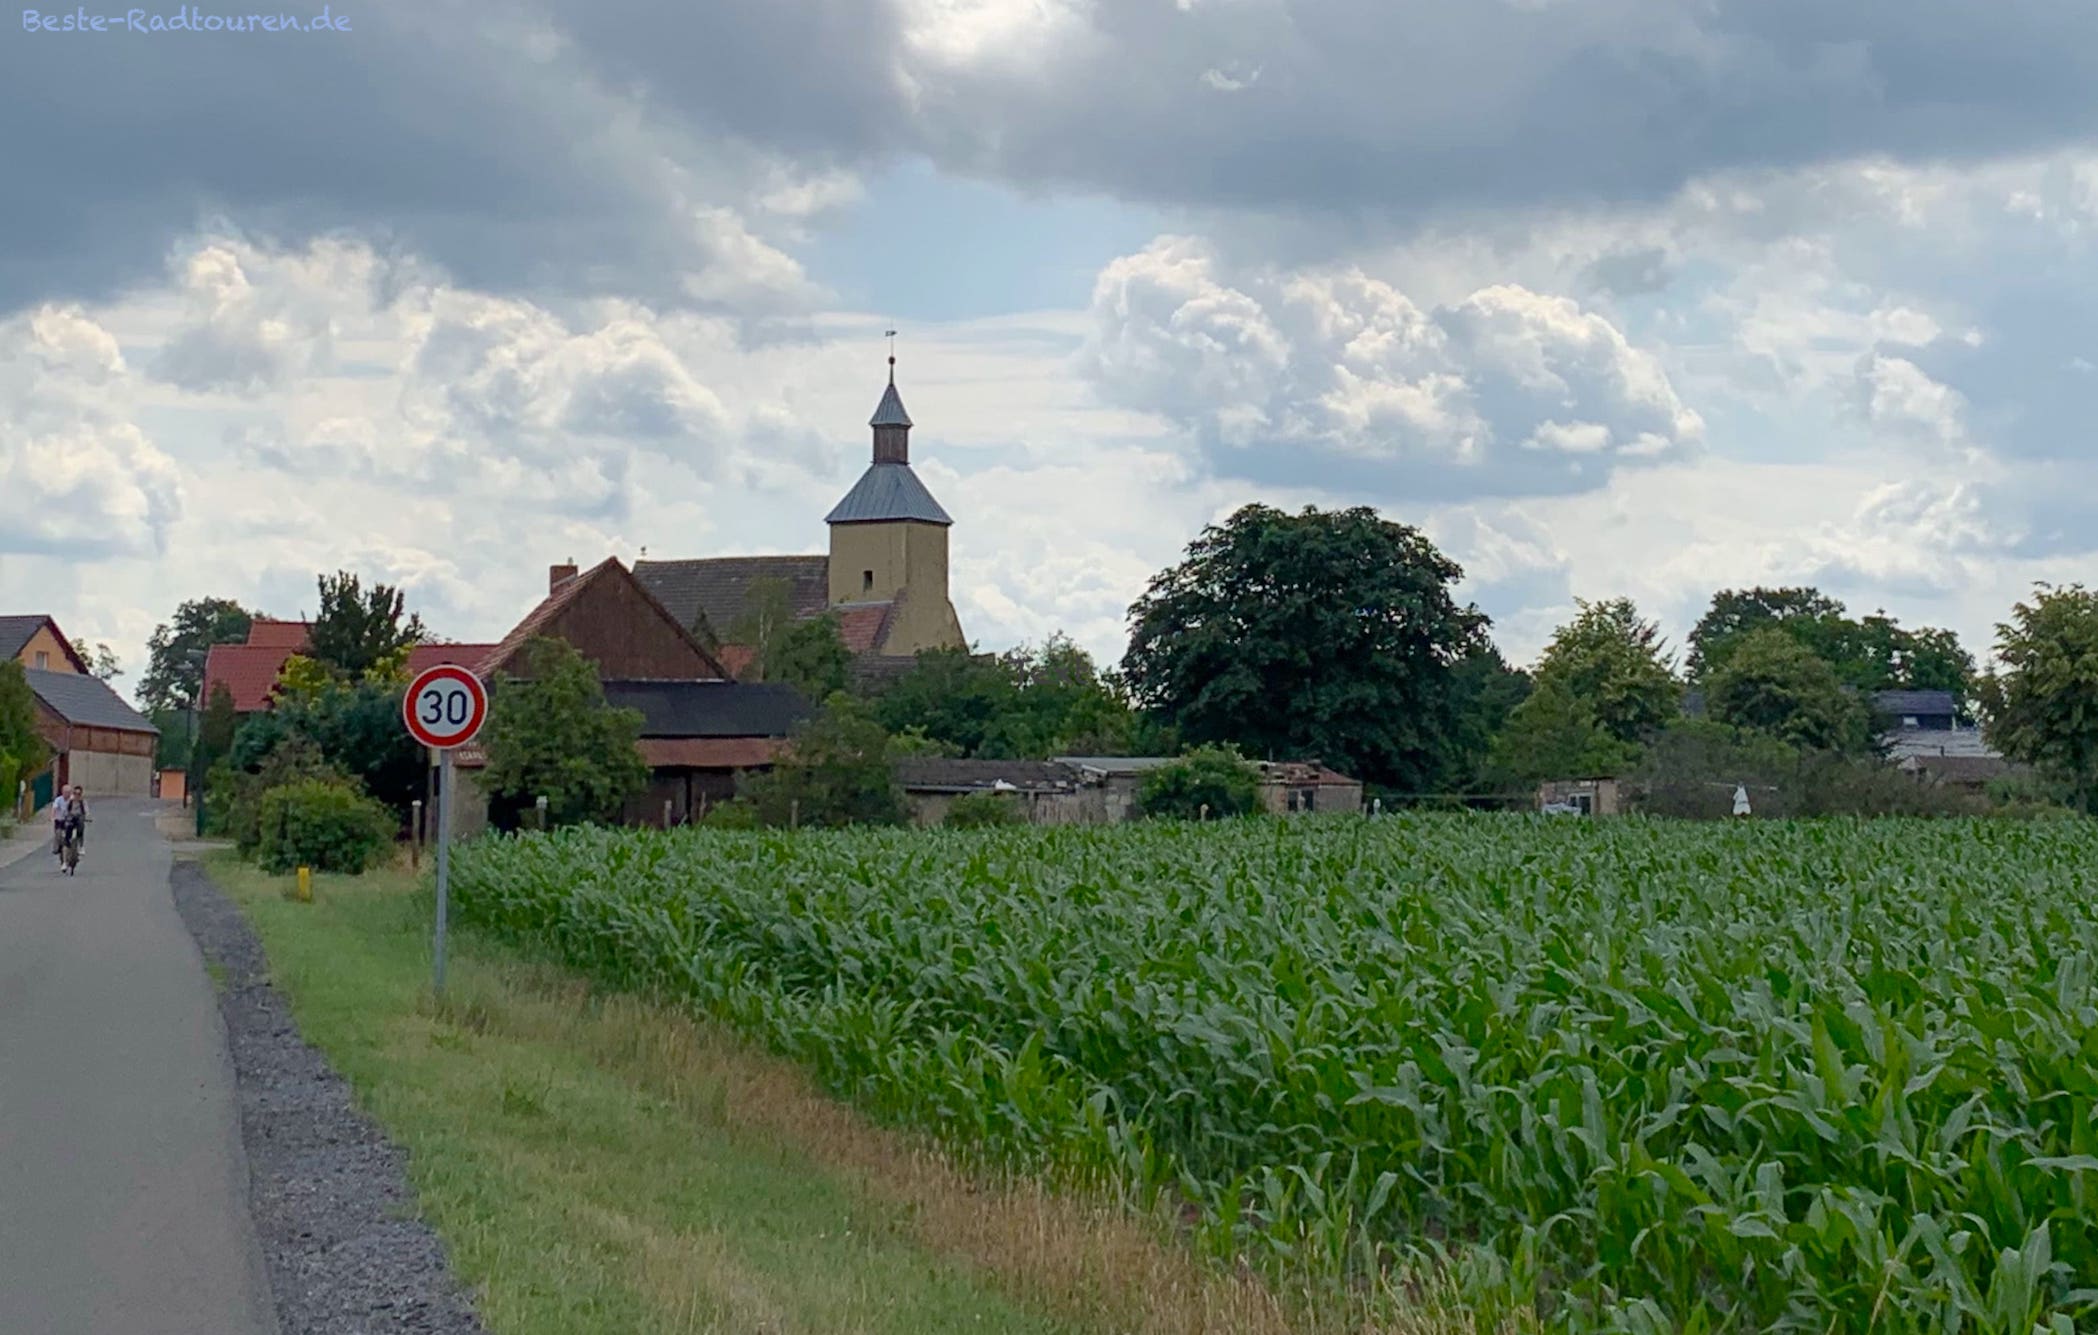 Foto vom Radweg aus: Dorf Leibchel in der Märkischen Heide, Kirche